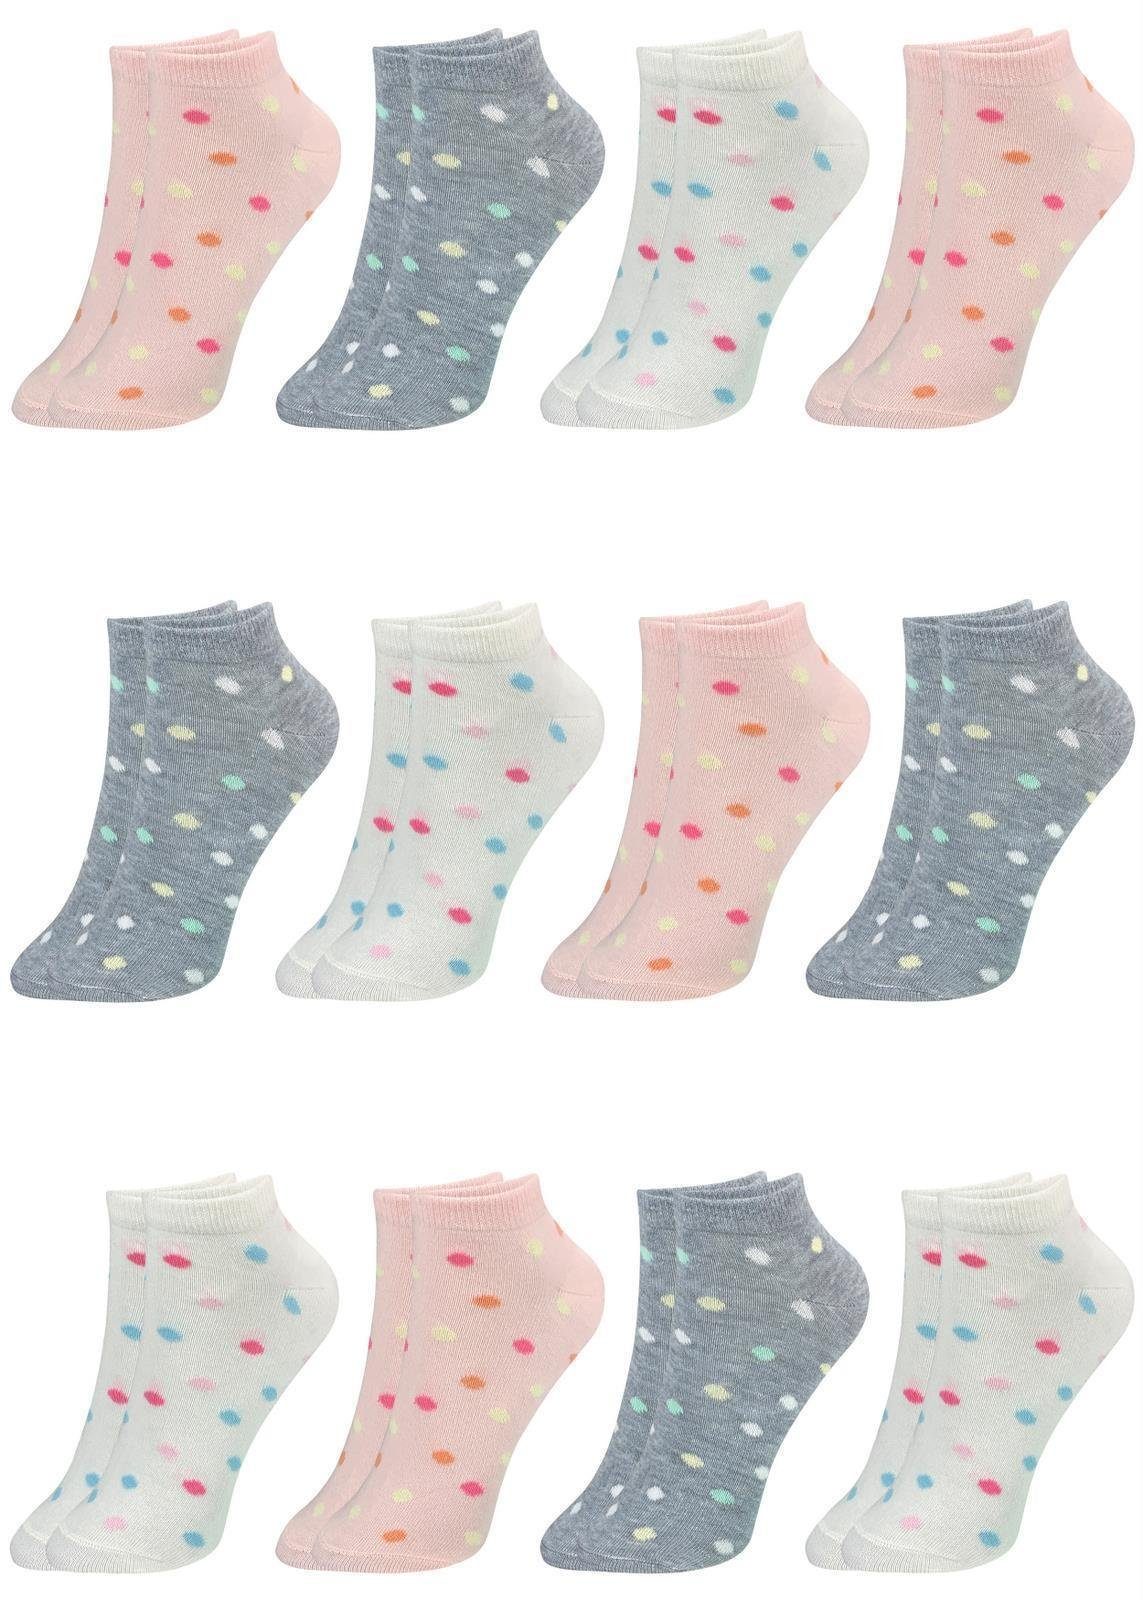 LOREZA Kurzsocken 12 Paar Mädchen Socken Sneakersocken Kindersocken (Paar, 12-Paar) 12-Paar Modell 5